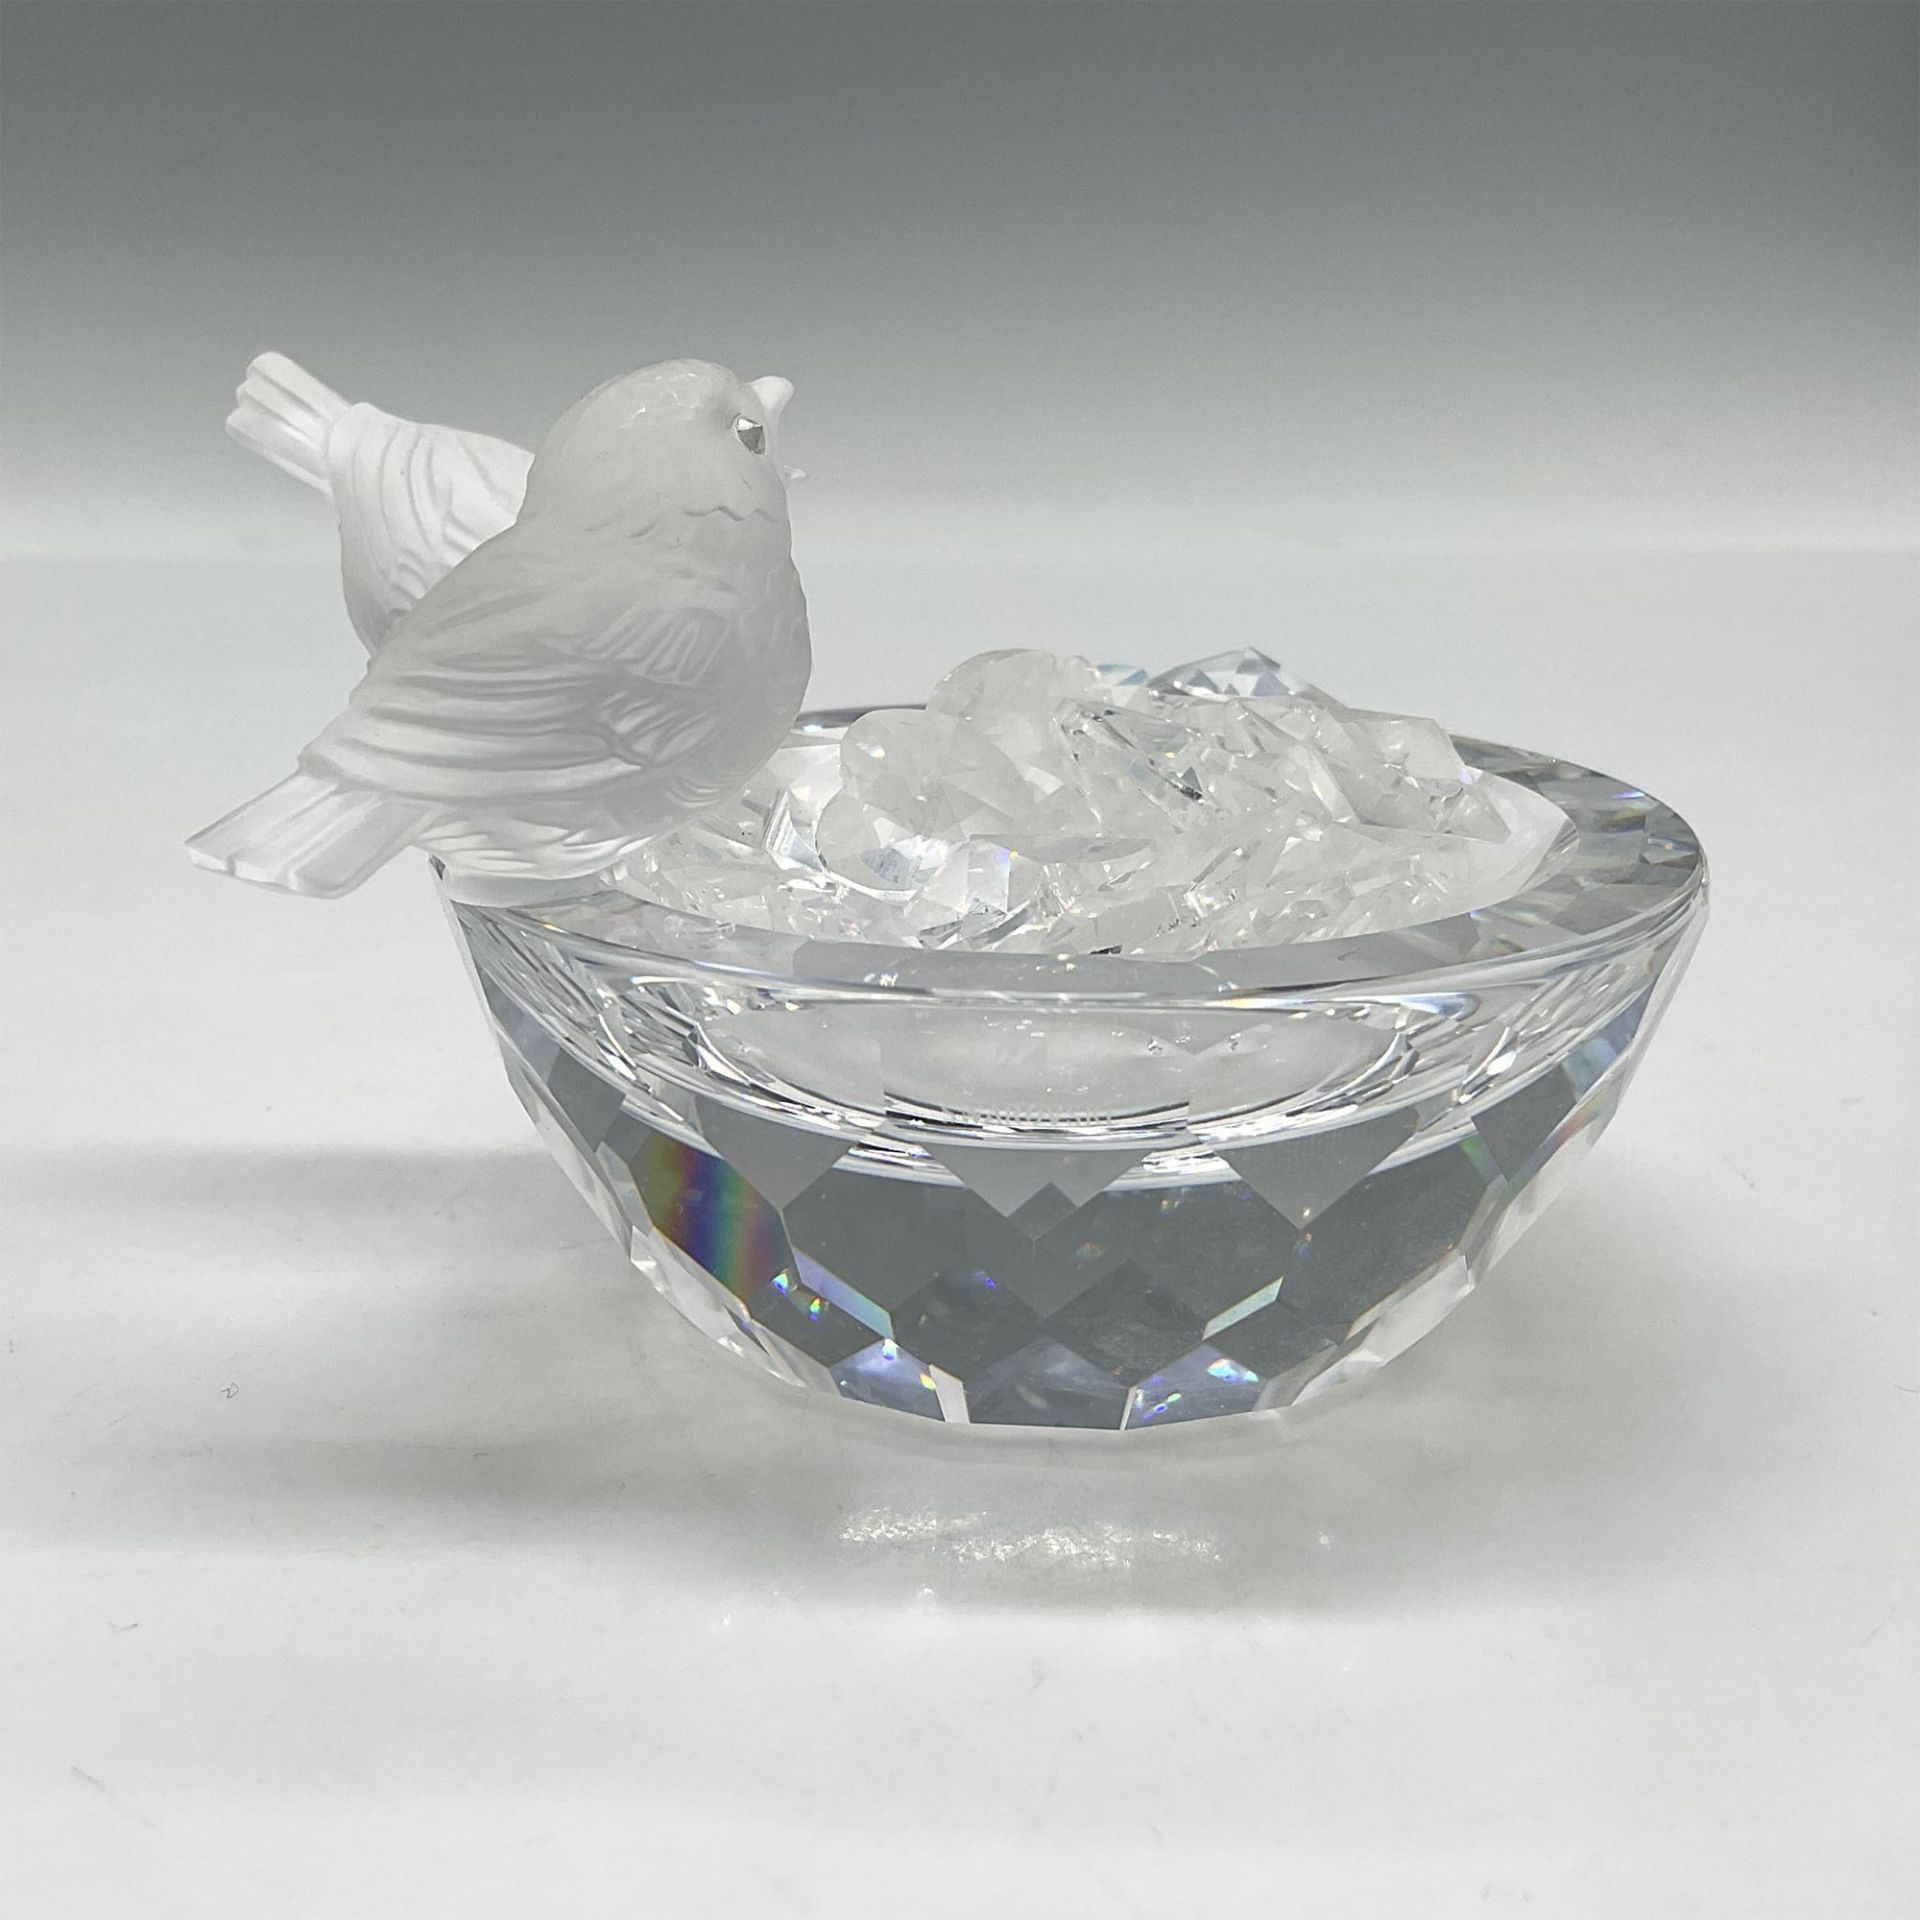 Swarovski Crystal Figurine, Bird Bath with Crystals - Bild 4 aus 4